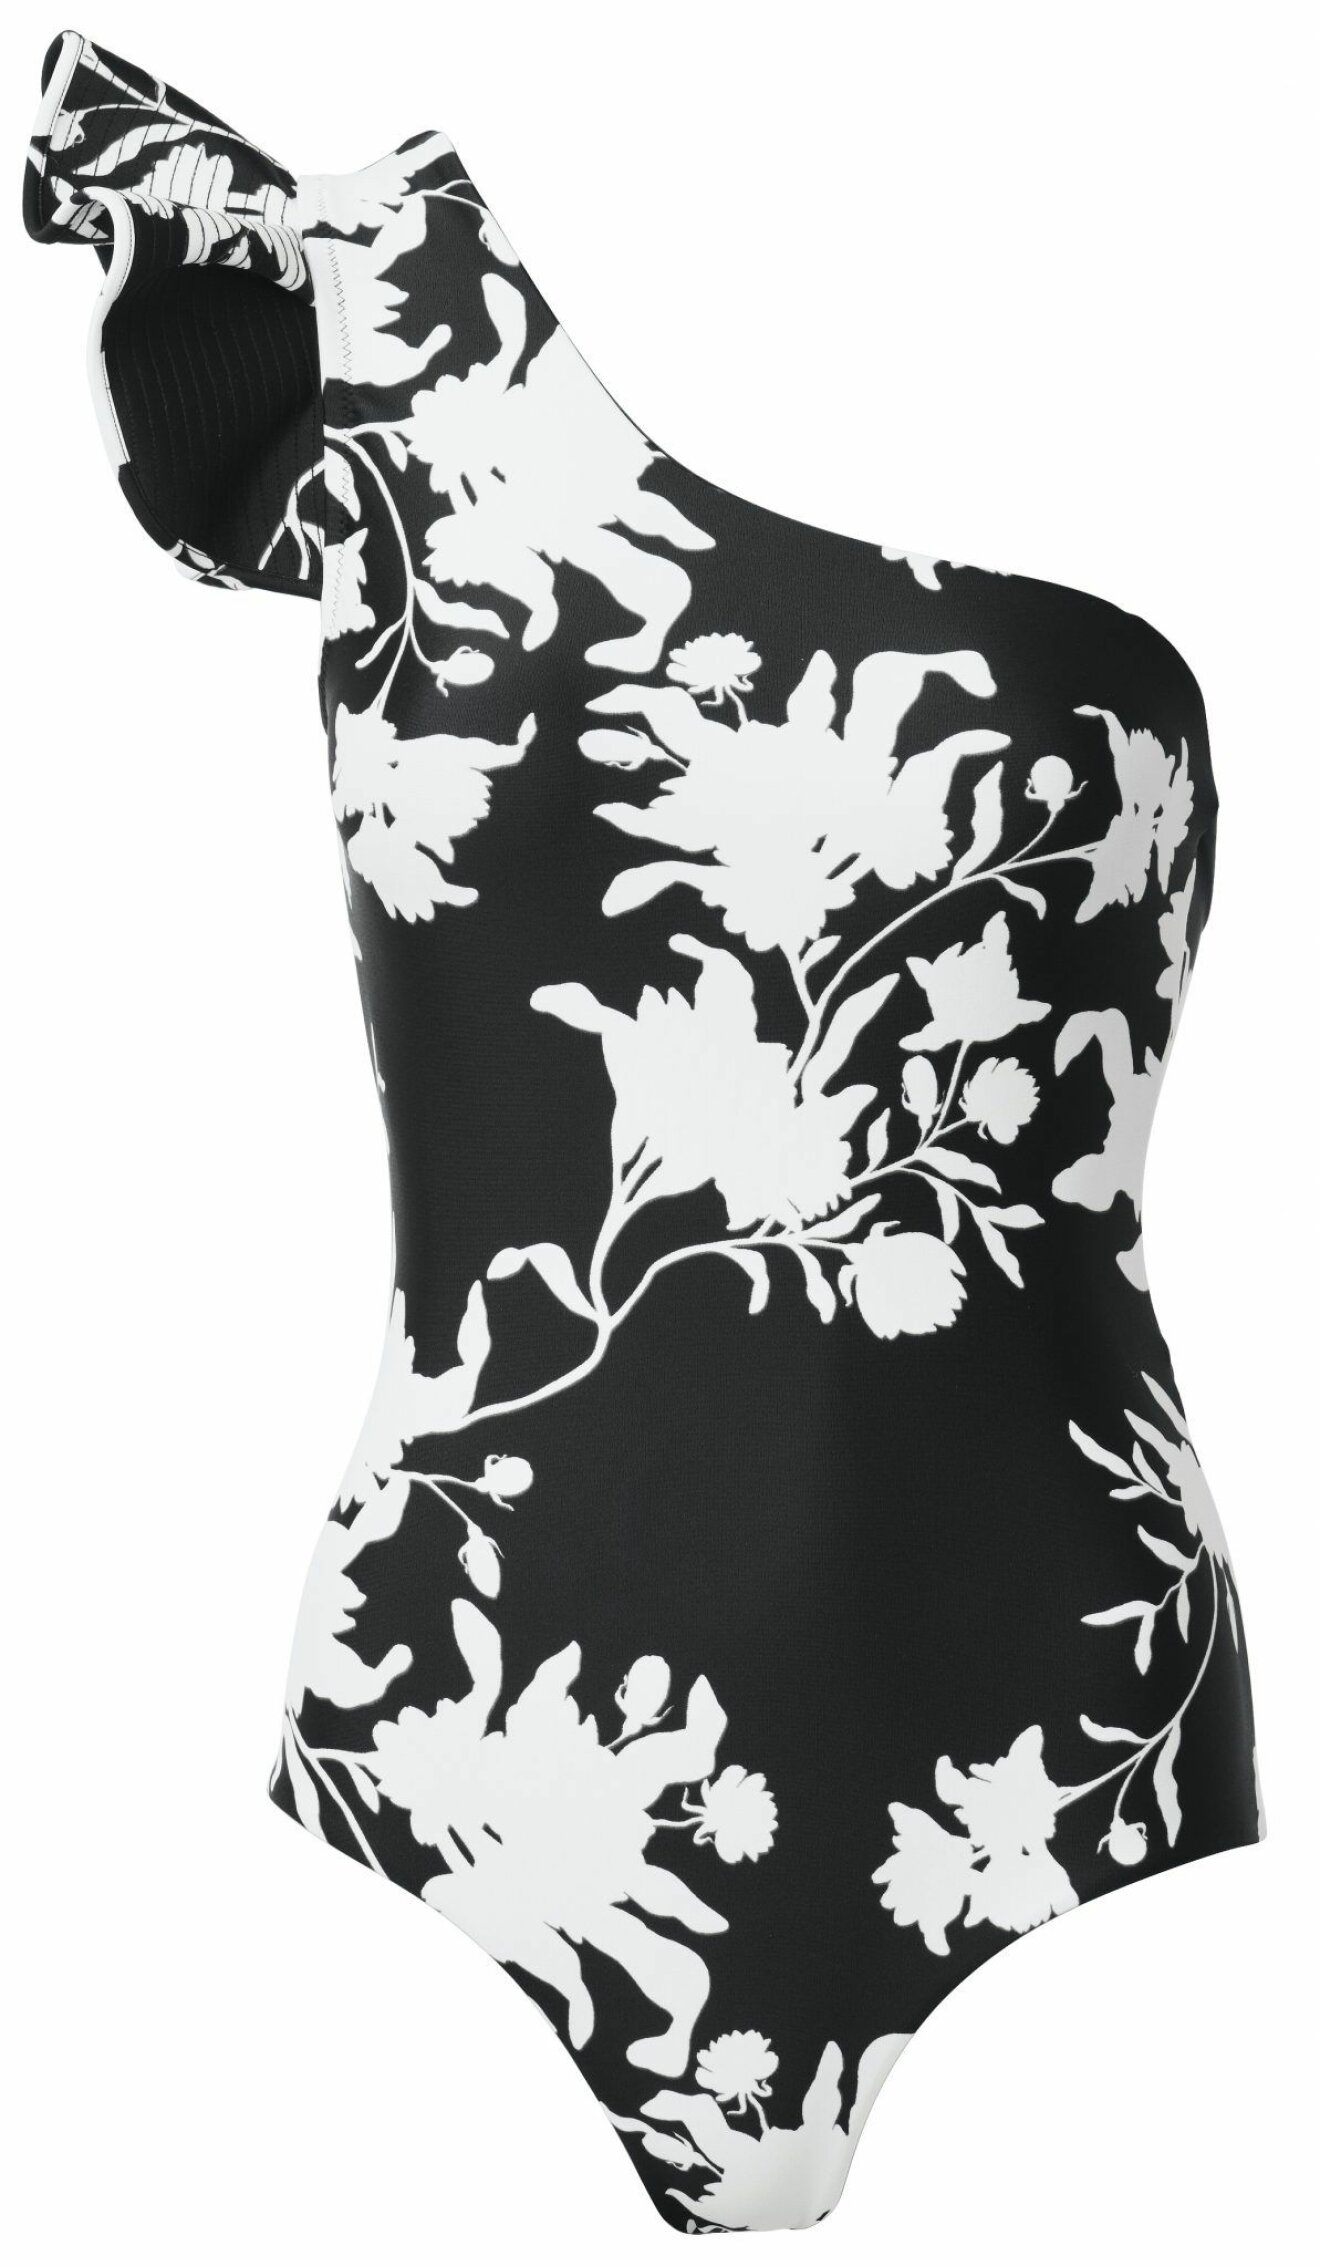 Asymmetrisk baddräkt med blommigt mönster i vitt och svart från samarbetet mellan H&M och Johanna Ortiz.